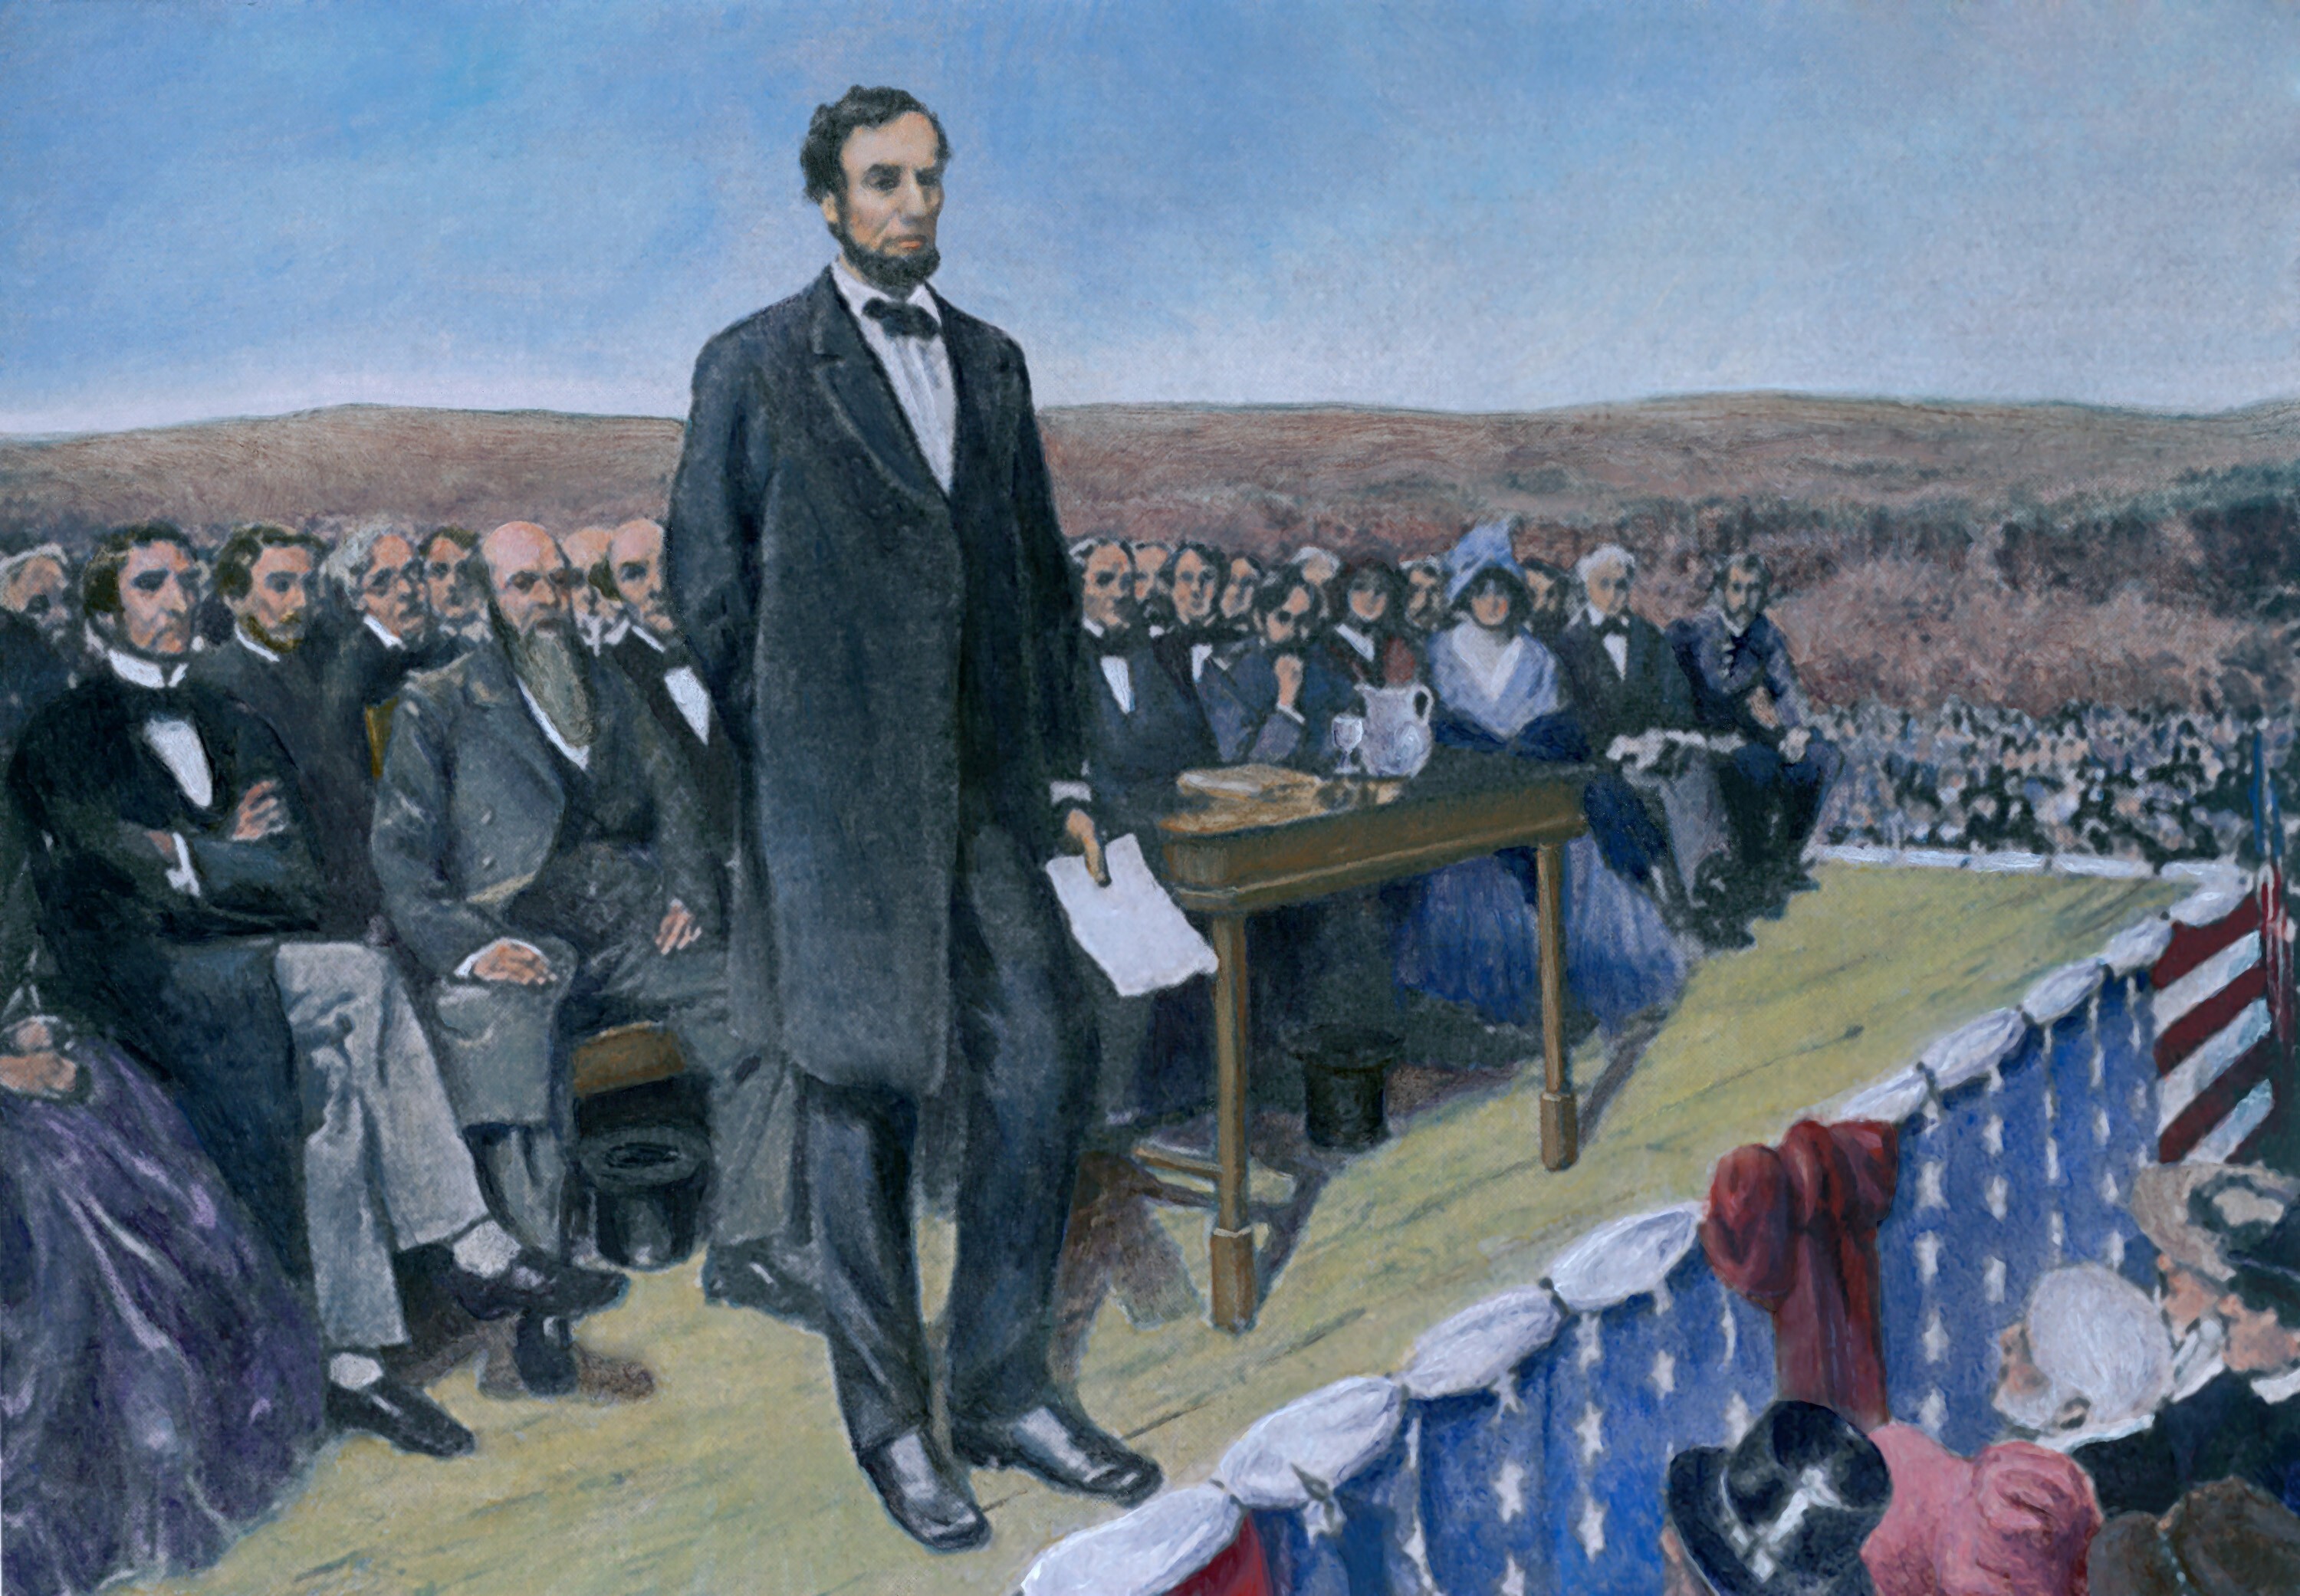 Former President Abraham Lincoln